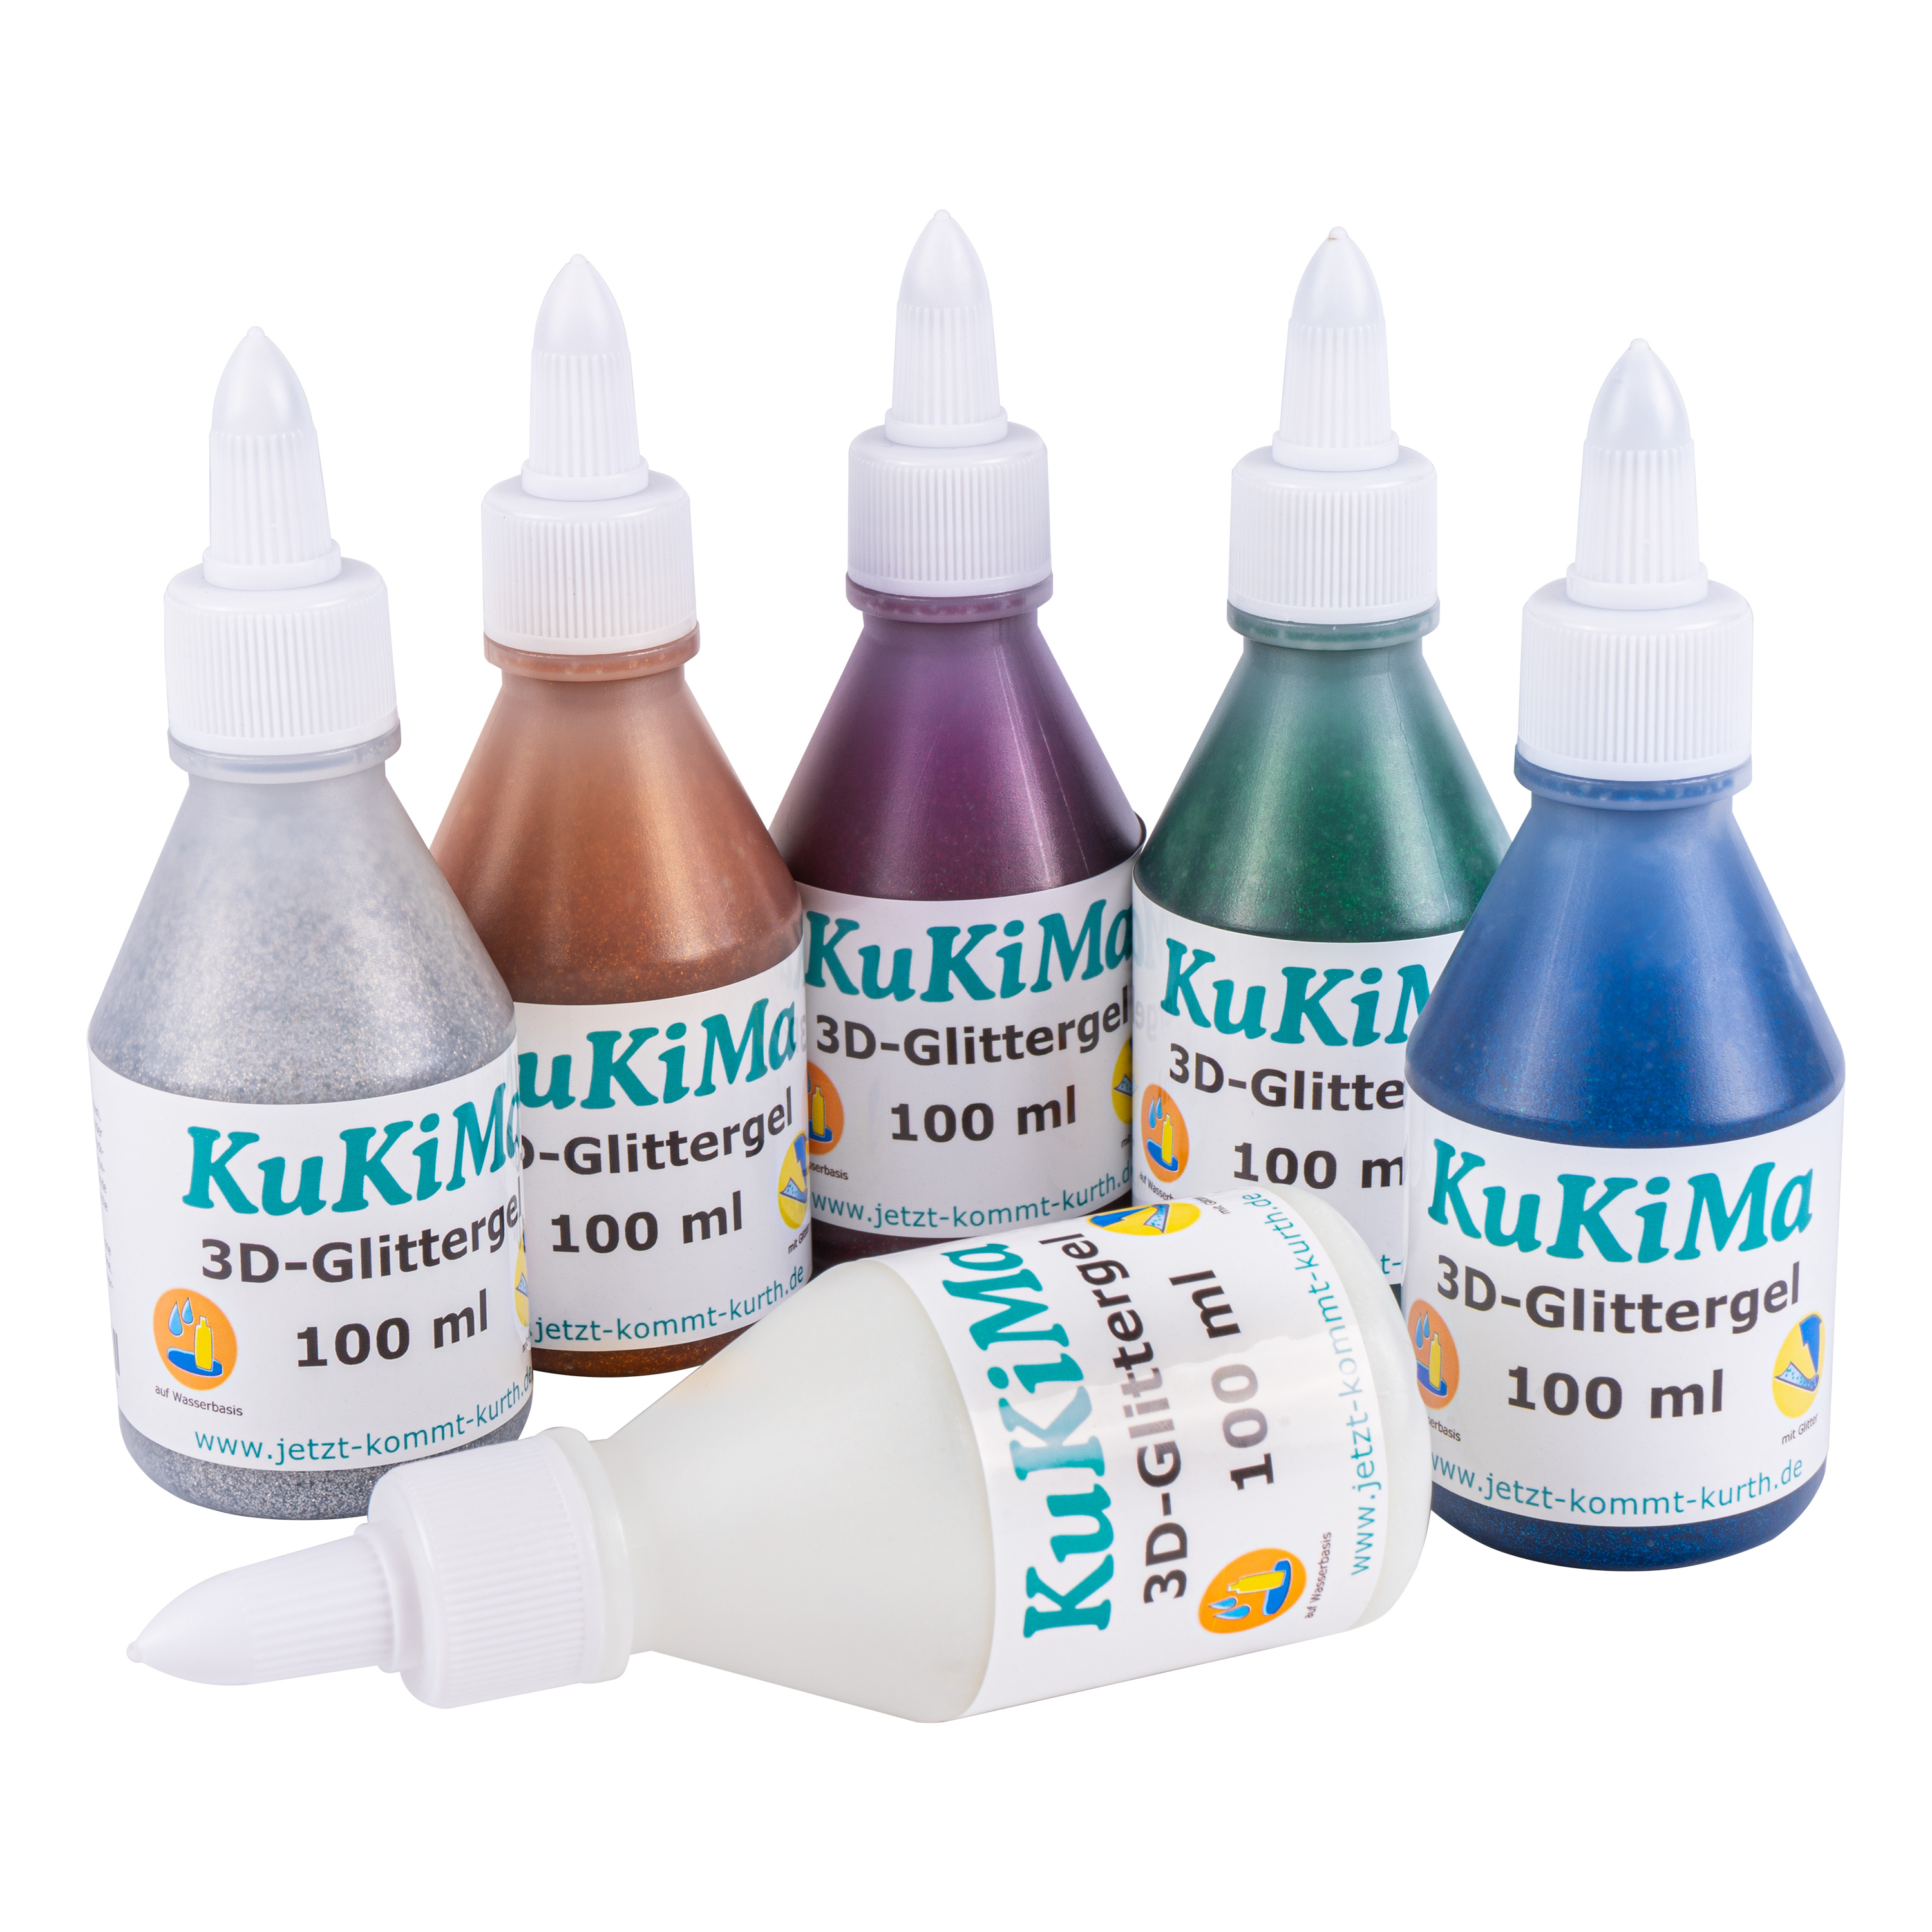 KuKiMa 3D-Glittergel 6-Farben-Set